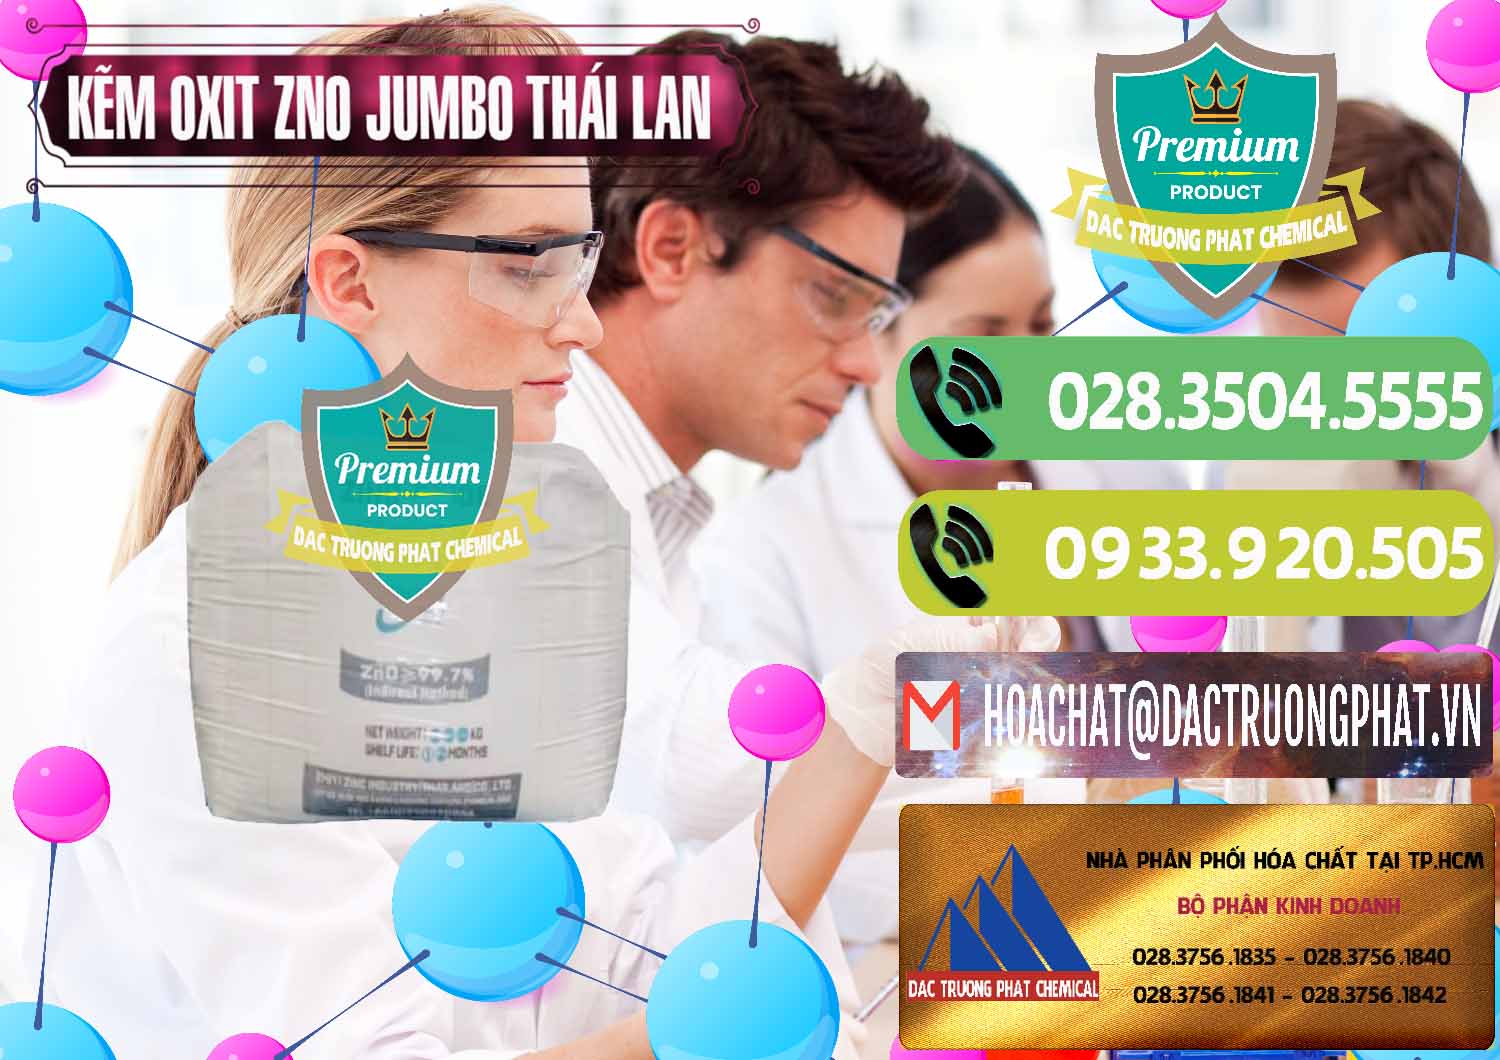 Cty chuyên bán - cung cấp Zinc Oxide - Bột Kẽm Oxit ZNO Jumbo Bành Thái Lan Thailand - 0370 - Phân phối và nhập khẩu hóa chất tại TP.HCM - hoachatmientay.vn